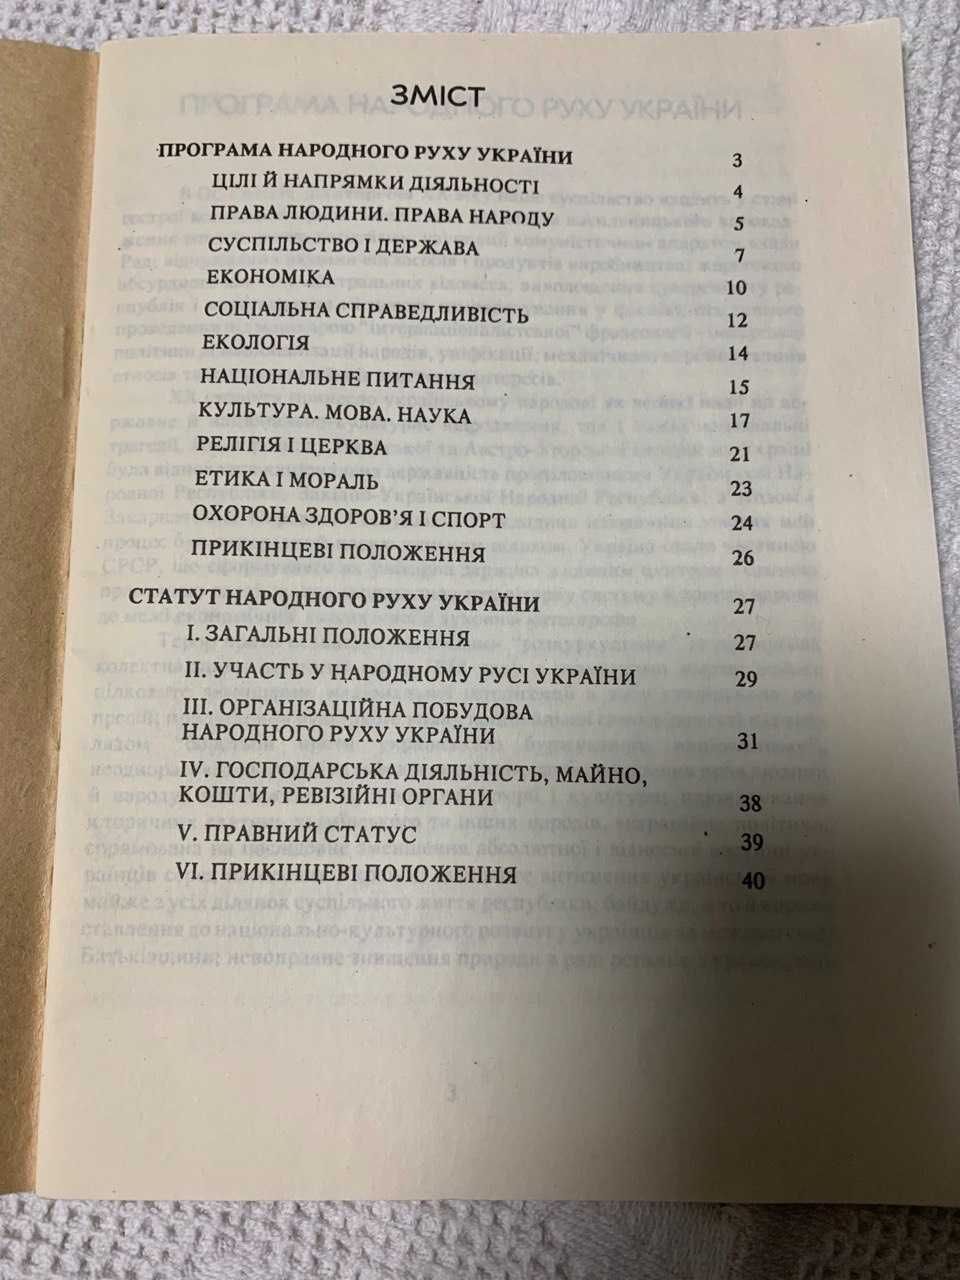 Брошура, книга " Програма і статут народного руху України"  1991 року